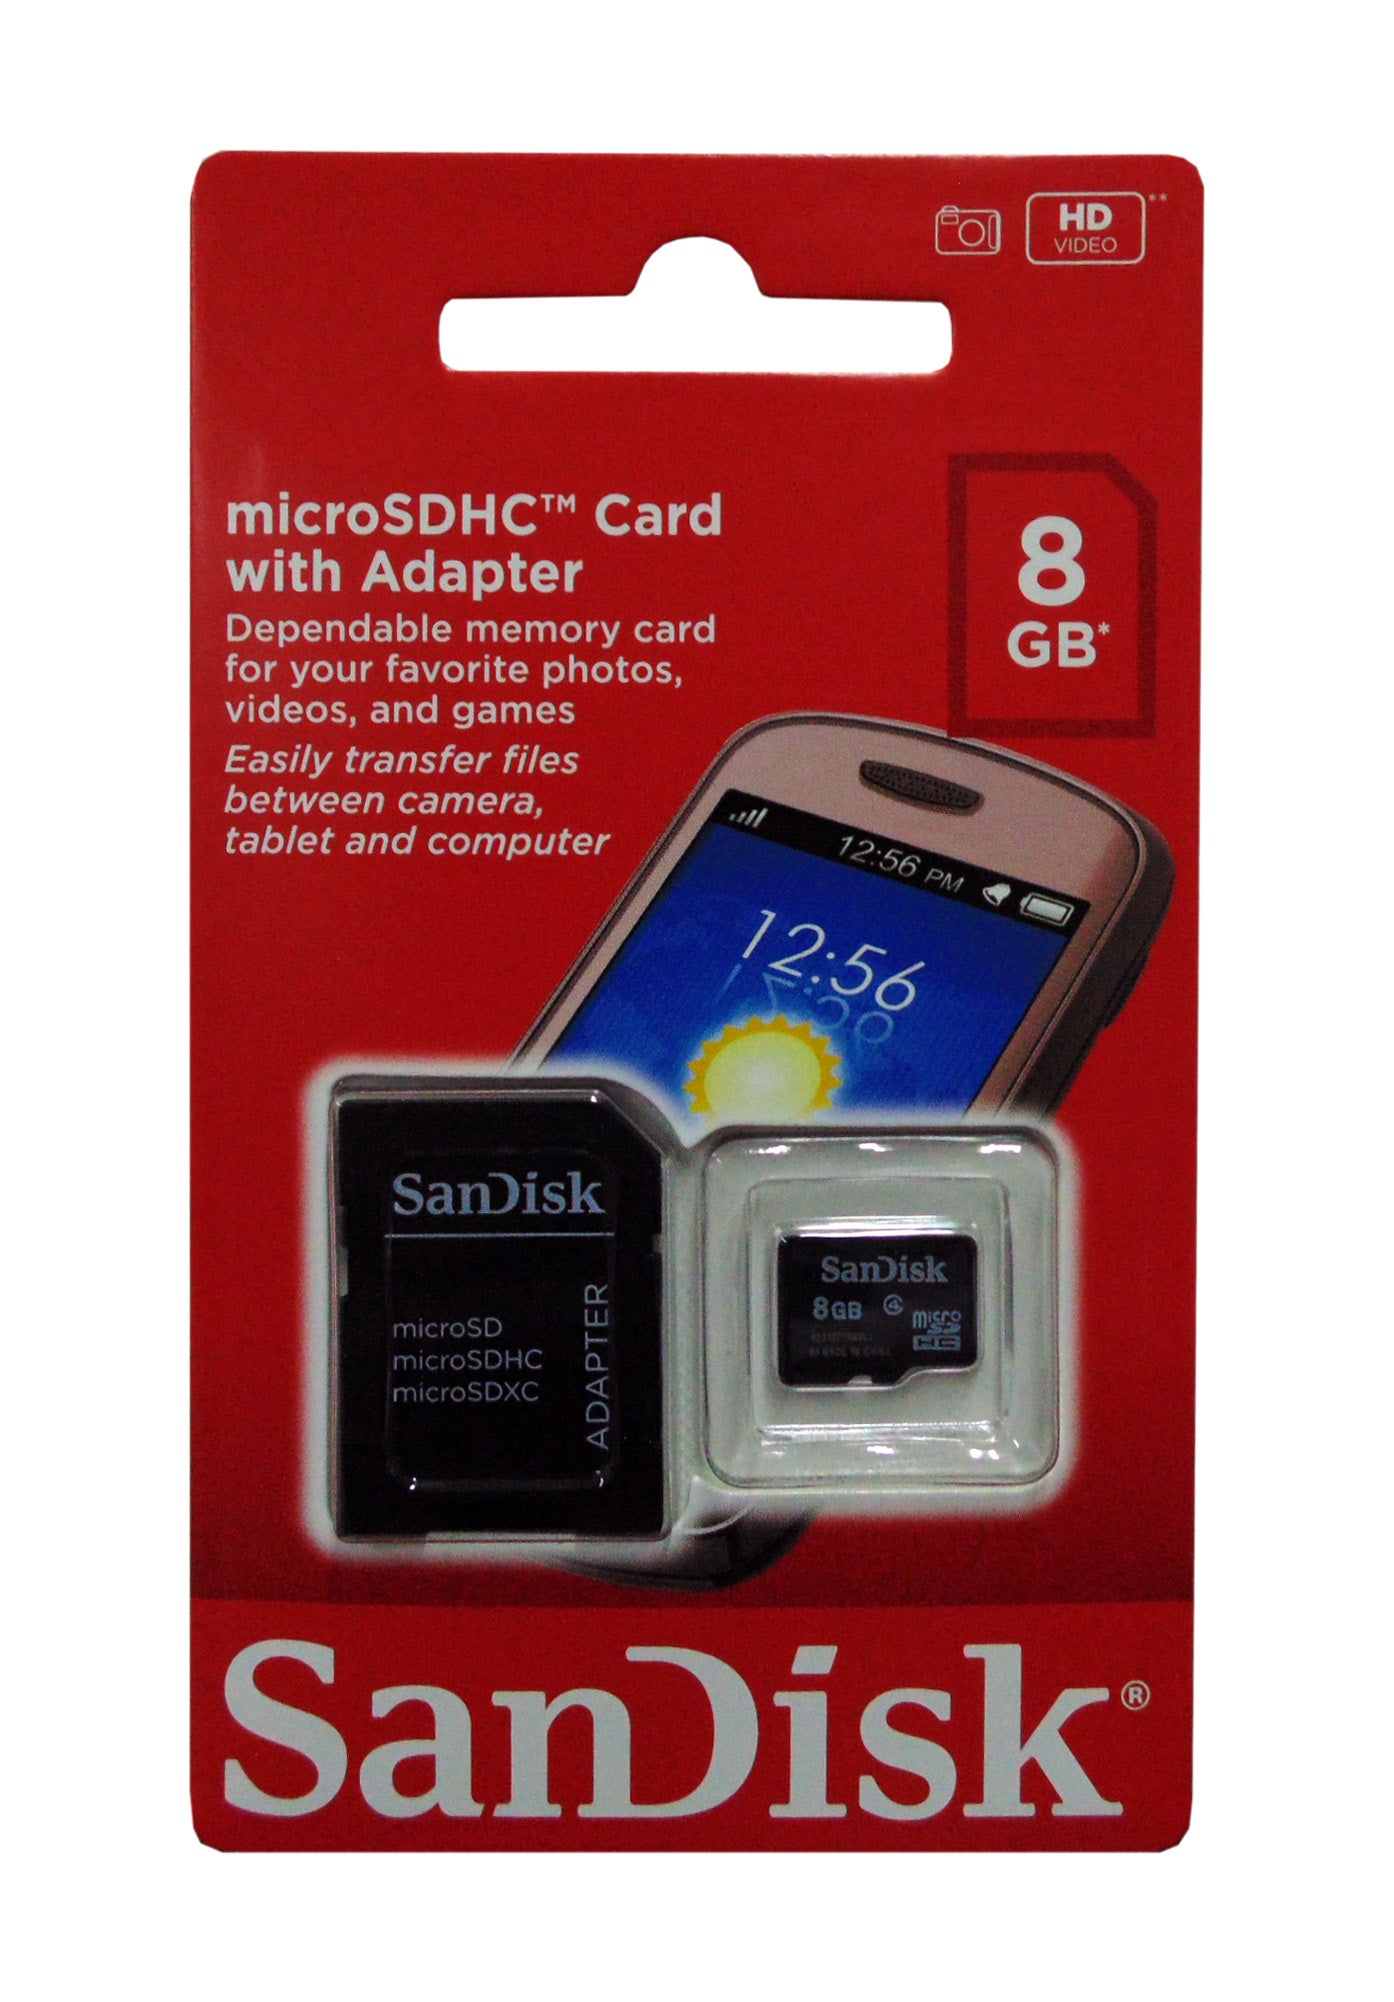 Memoria Micro SD Sandisk SDHC 8GB Clase 4 con adaptador